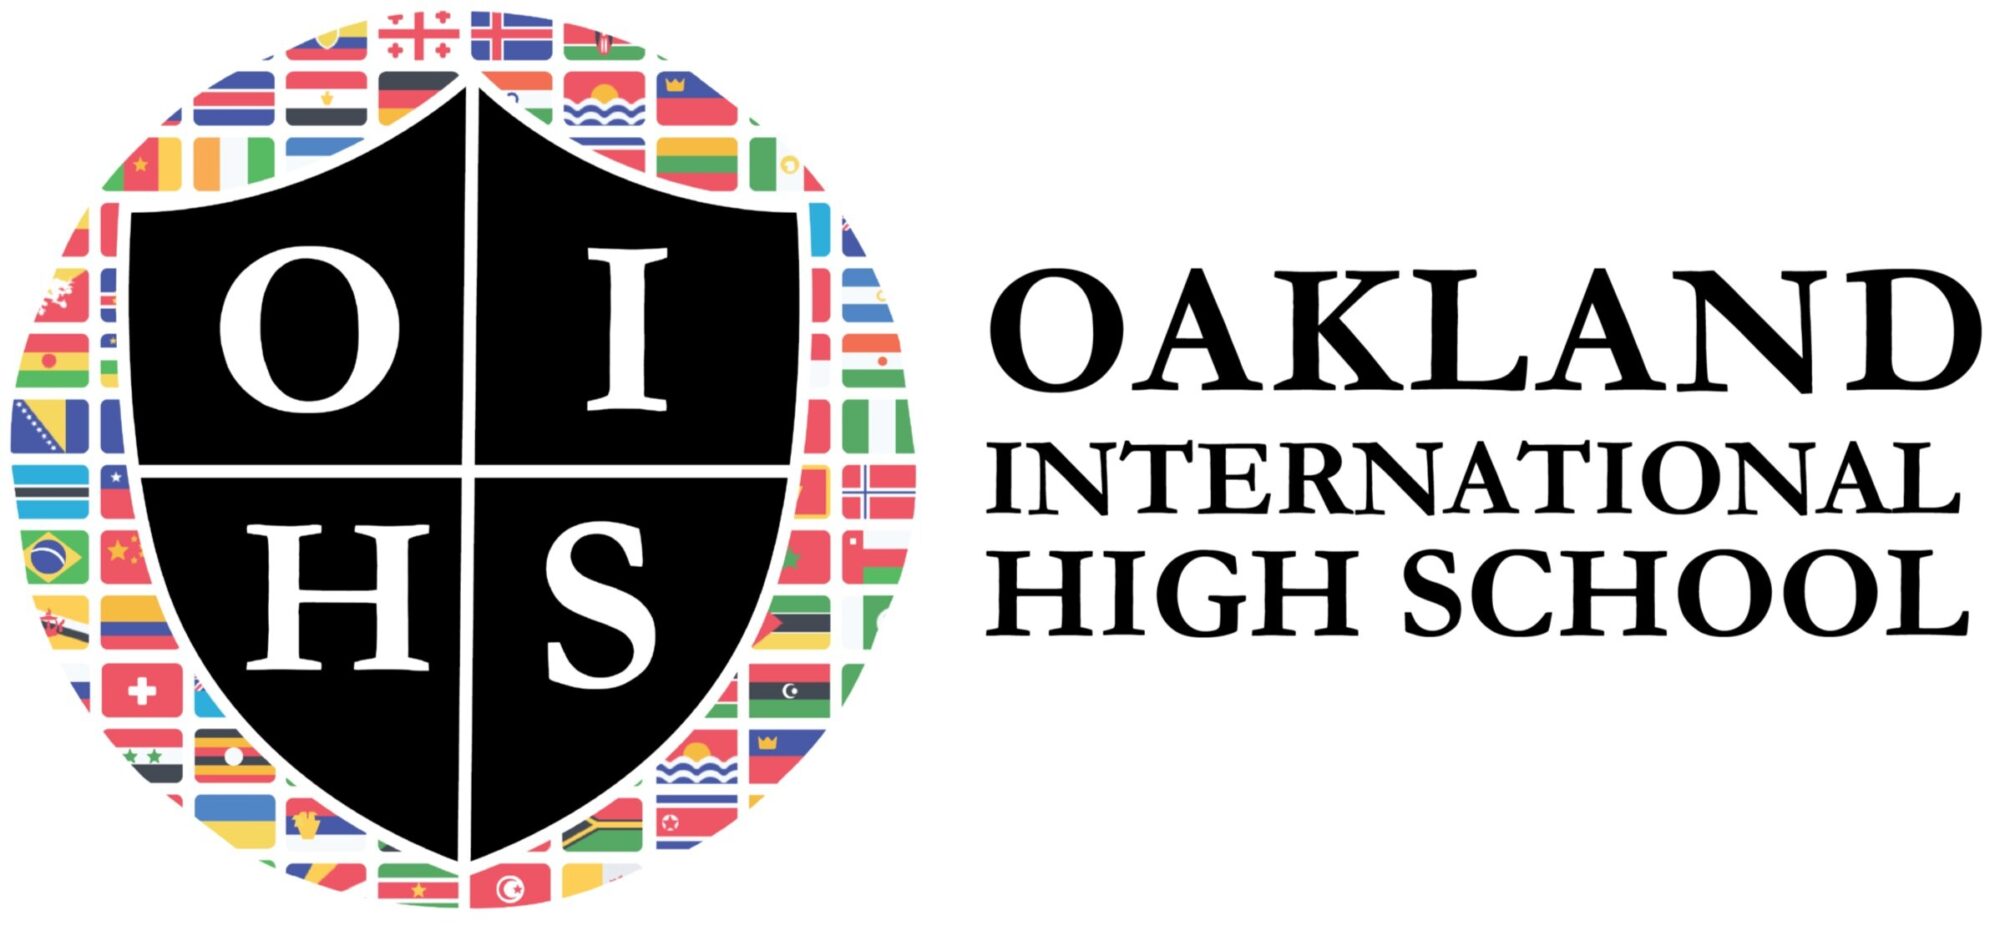 Oakland International High School